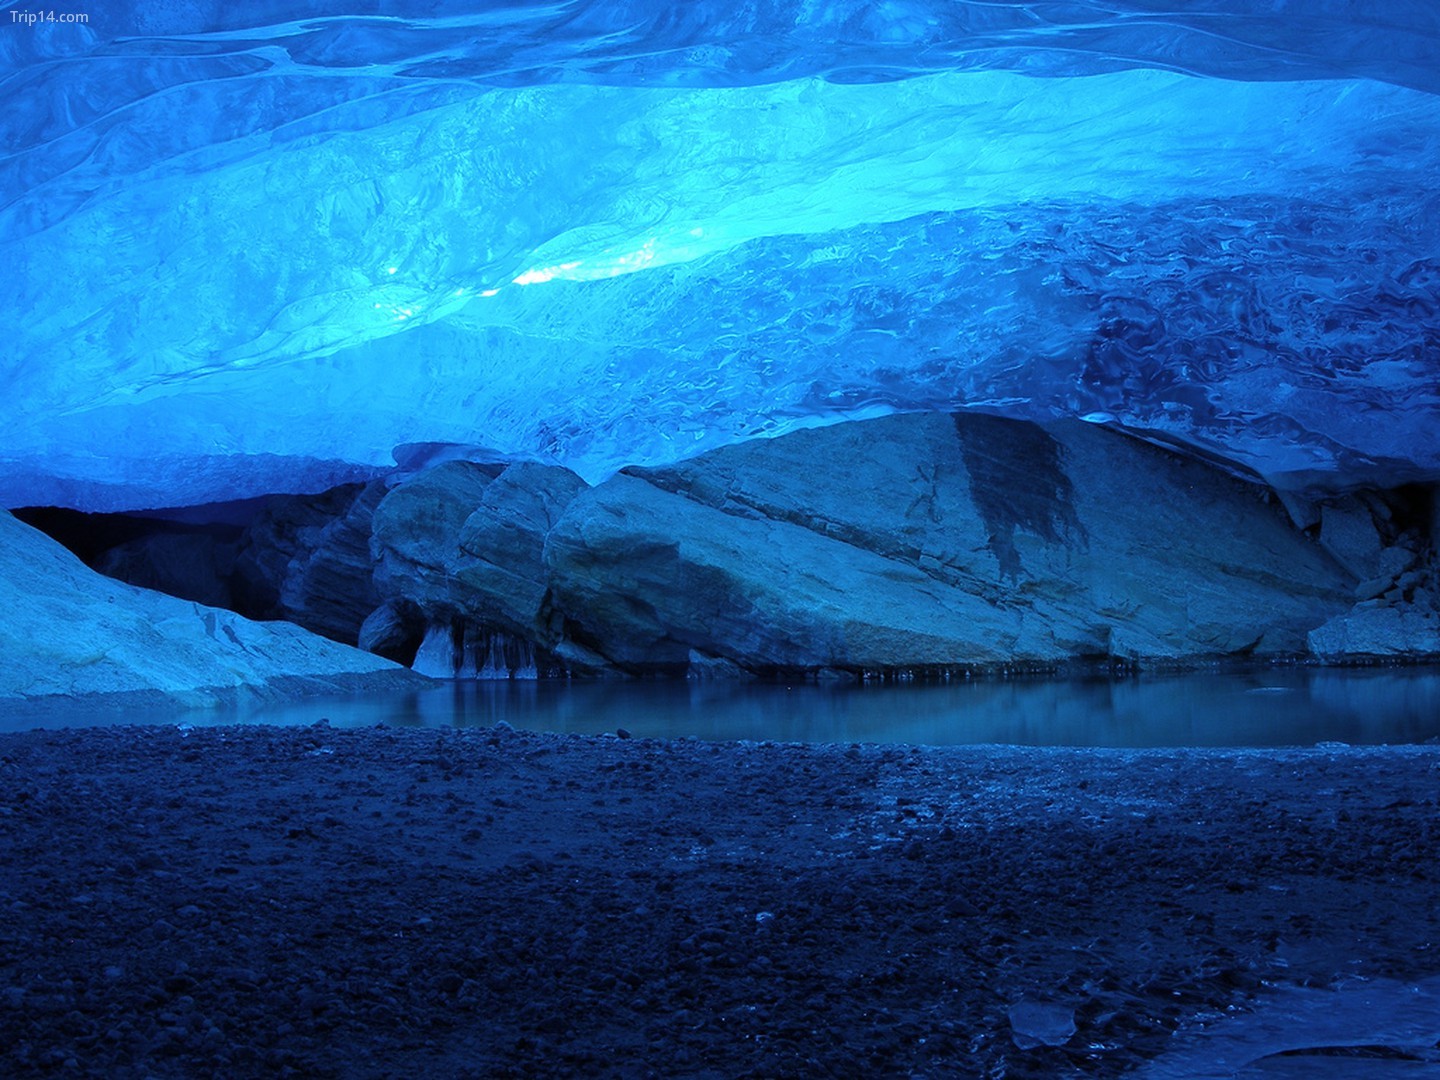 Ghé thăm một hang động băng được hình thành bởi sự nóng lên toàn cầu